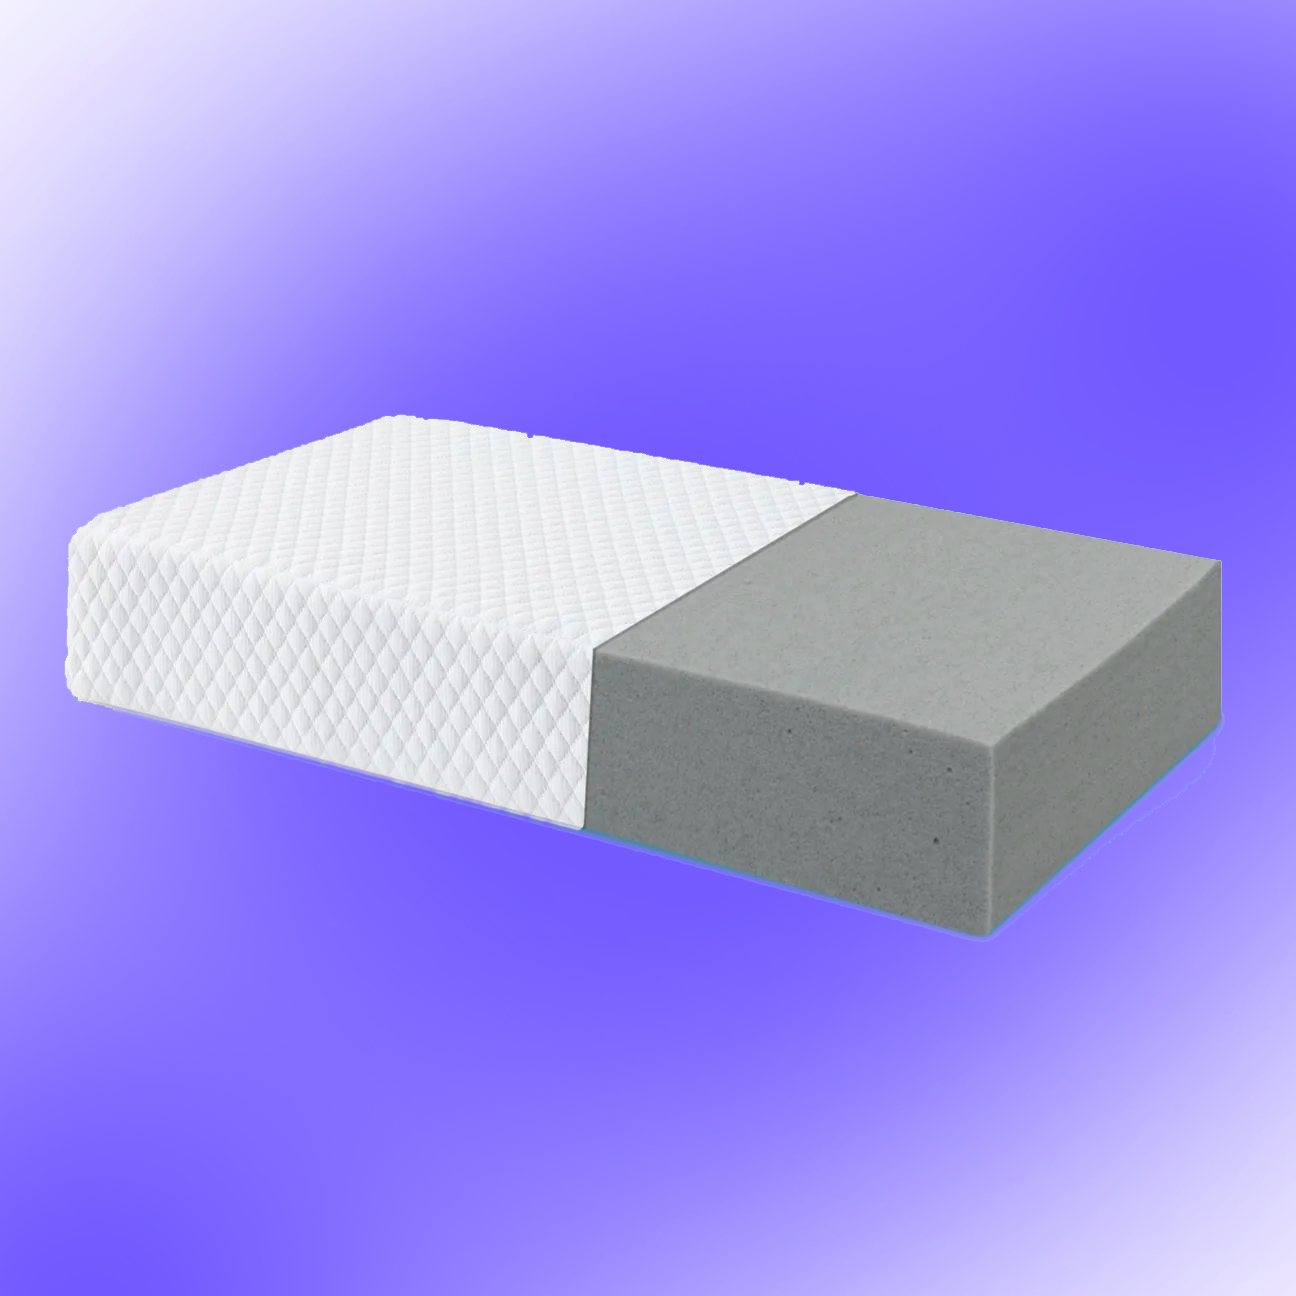 Sleepy Cube® - L'oreiller conçu pour les personnes qui dorment sur le côté !